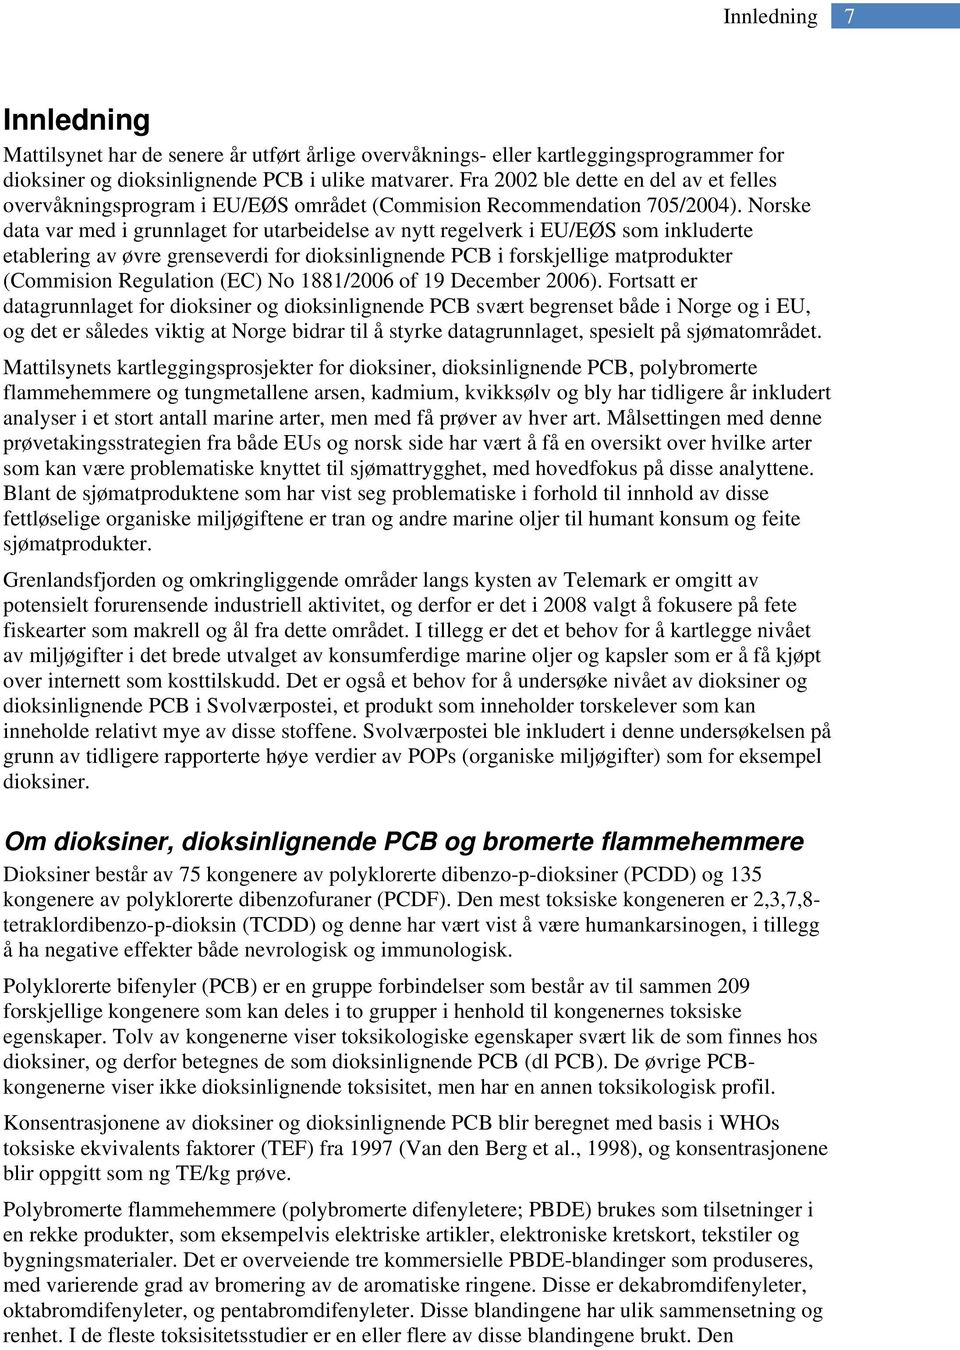 Norske data var med i grunnlaget for utarbeidelse av nytt regelverk i EU/EØS som inkluderte etablering av øvre grenseverdi for dioksinlignende PCB i forskjellige matprodukter (Commision Regulation